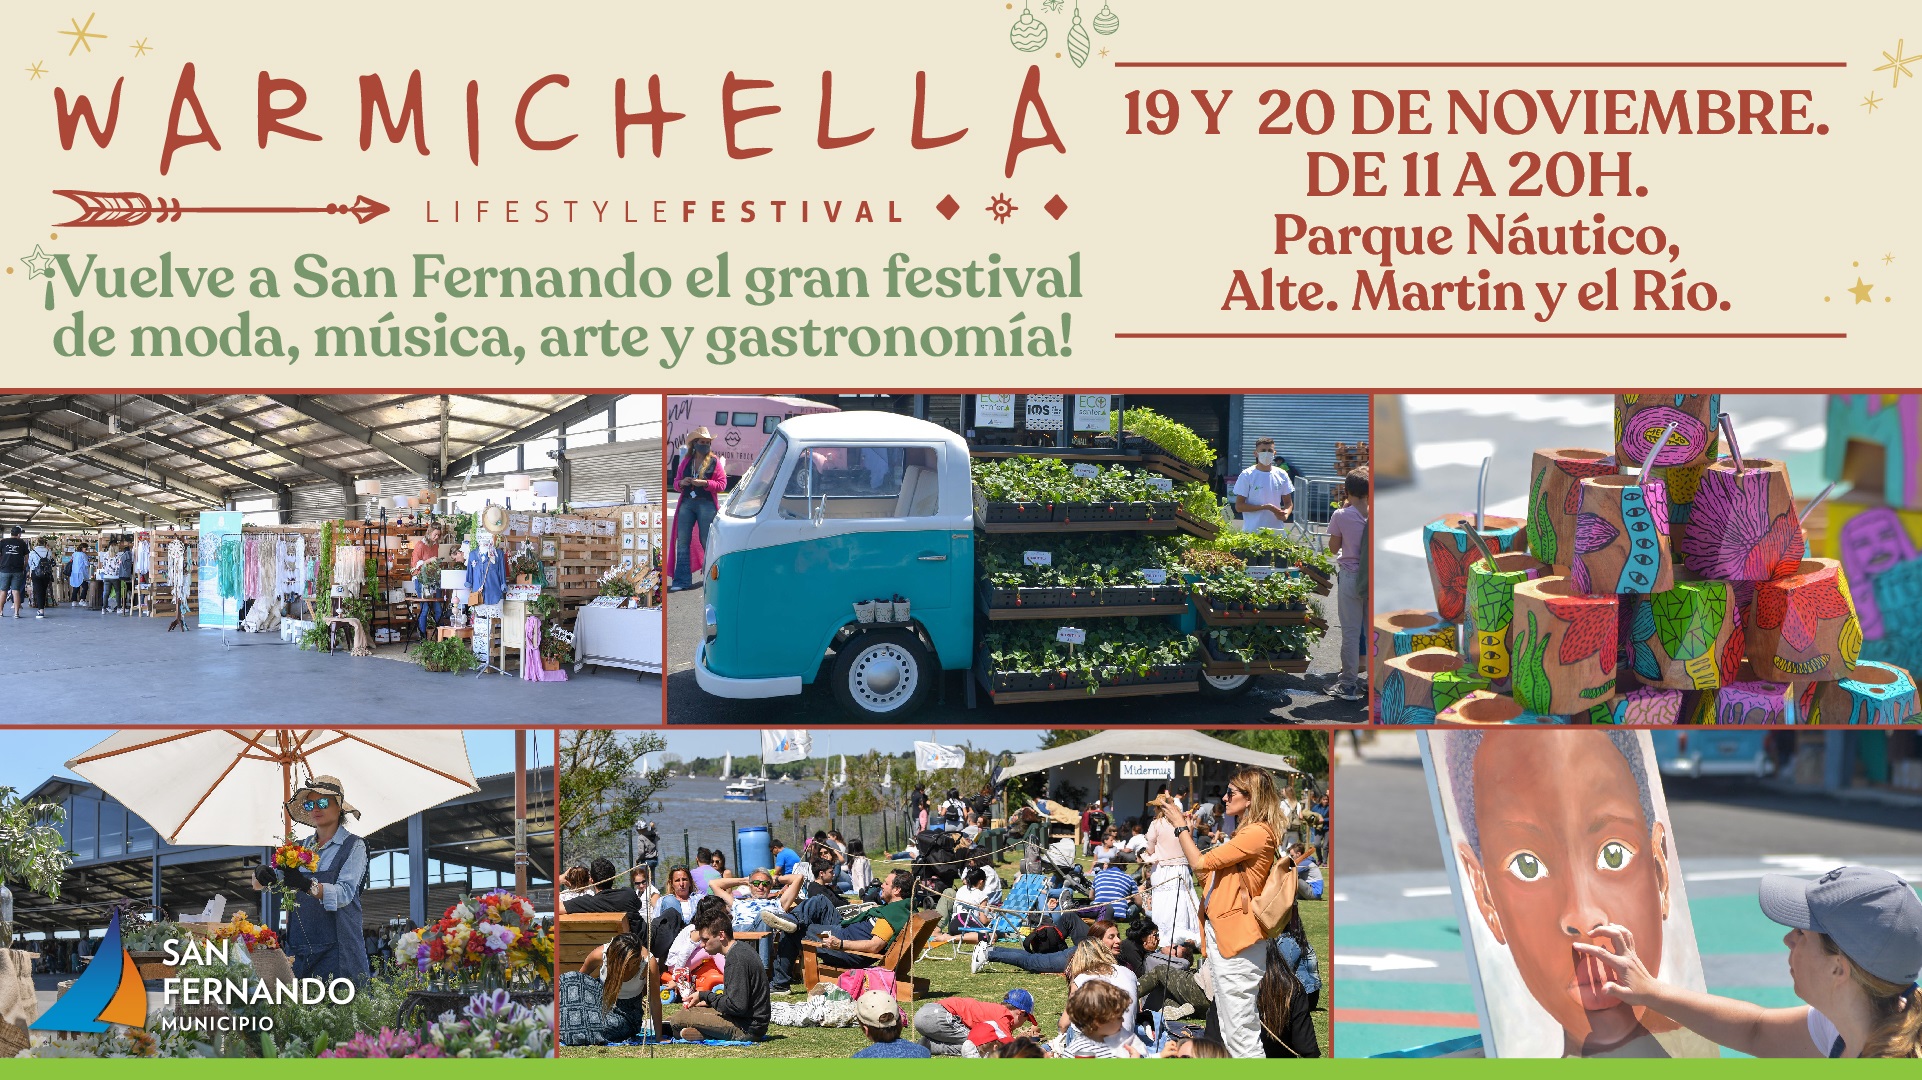 Festival Warmichella vuelve este sábado y domingo a San Fernando